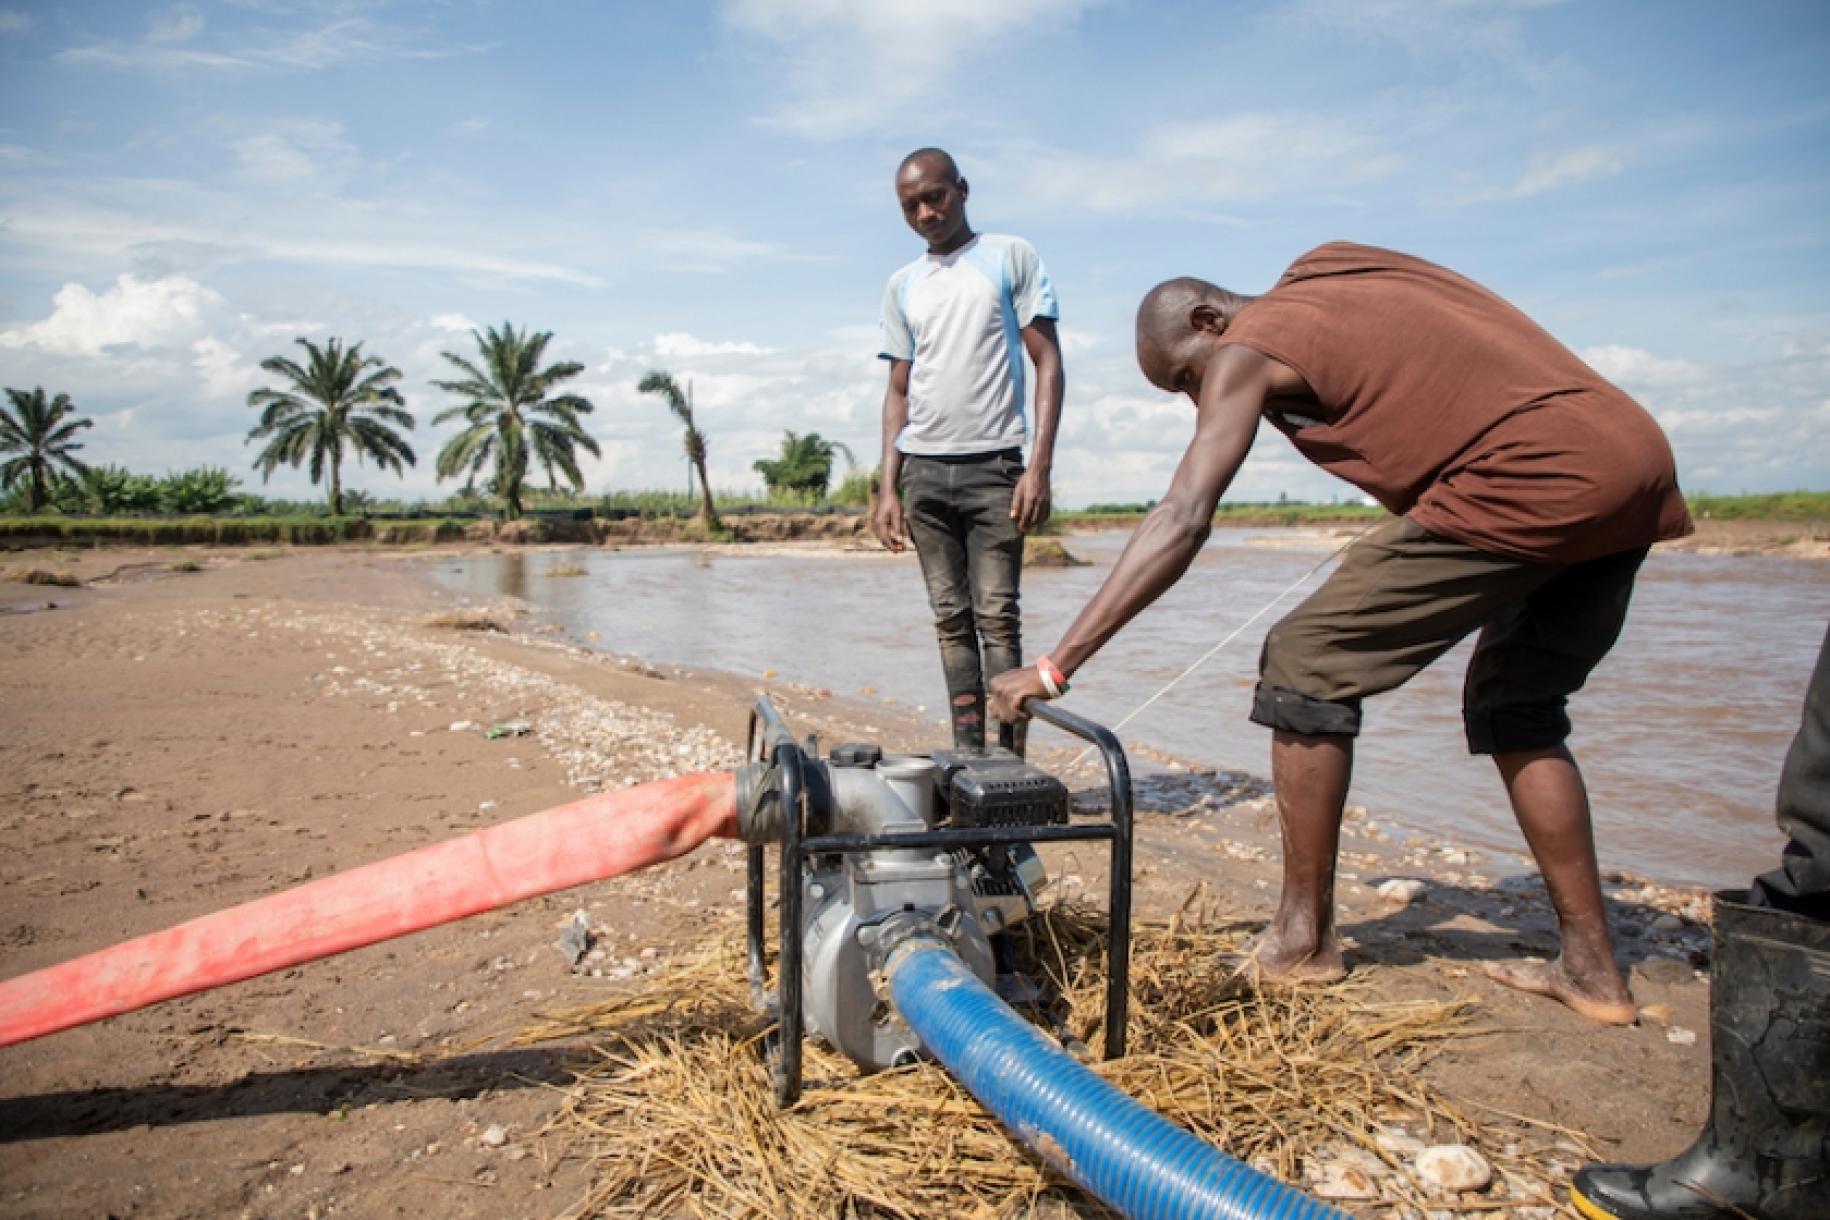 En Burundi, cerca de un estanque bordeado de palmeras, un hombre se inclina sobre el motor de un sistema de recogida de agua para hacerlo funcionar, mientras otro hombre lo observa.